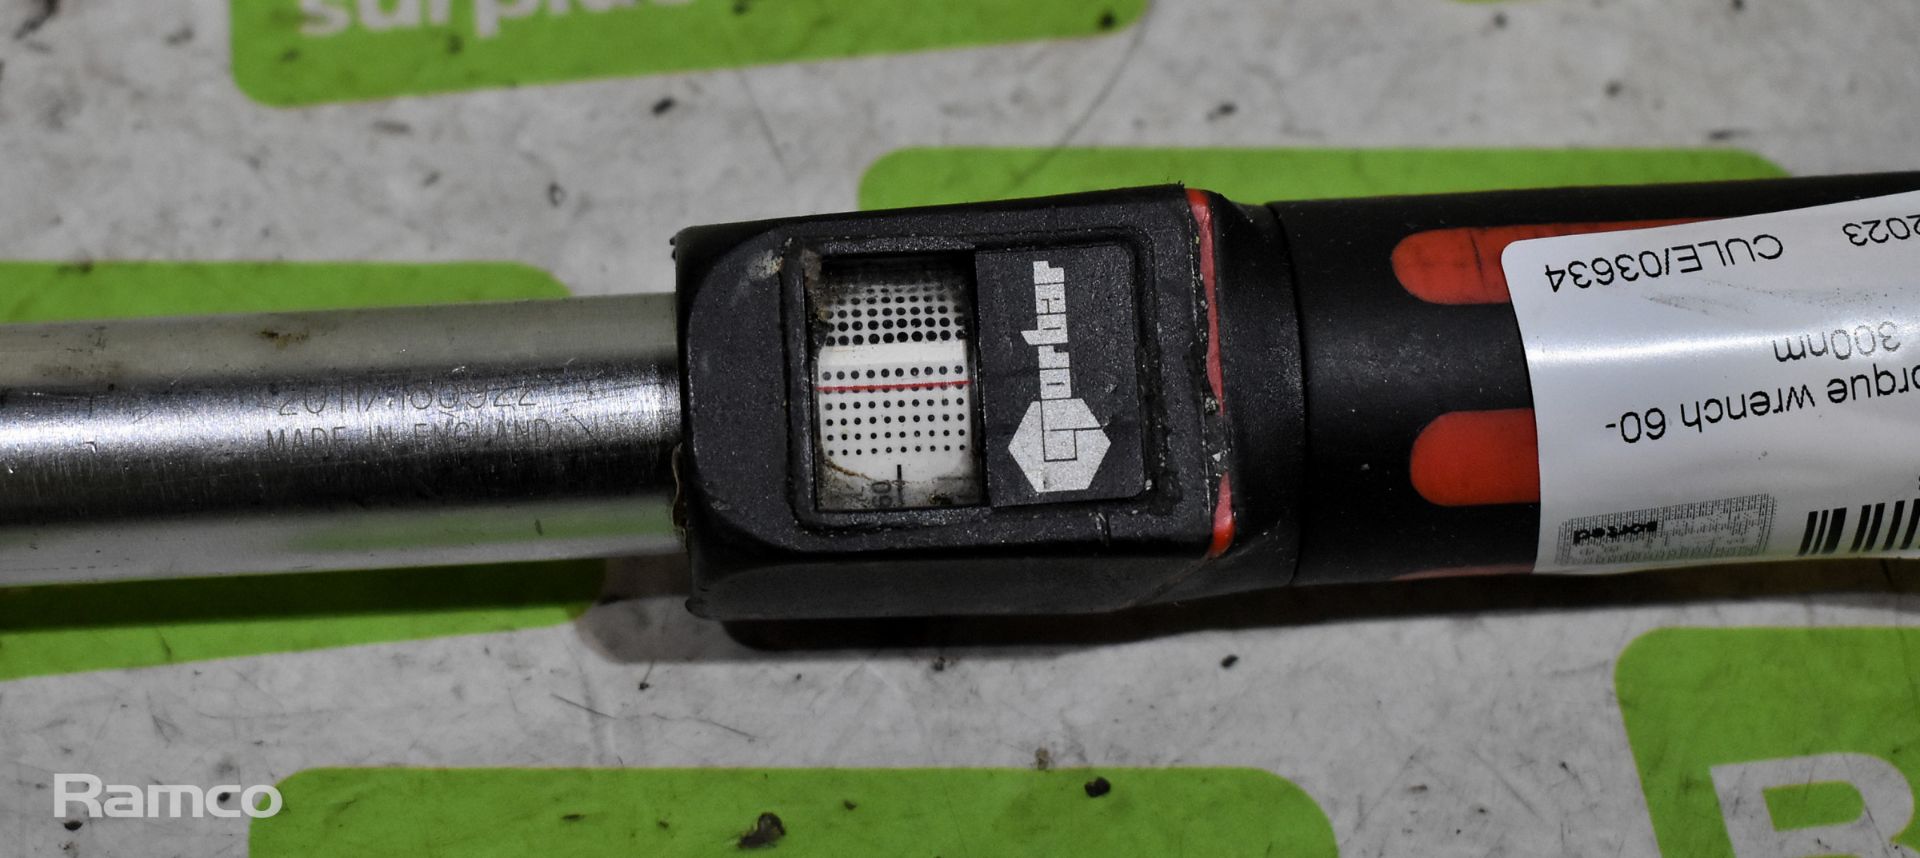 Norbar torque wrench 60-300nm, 10x zoom magnifier - Bild 6 aus 6